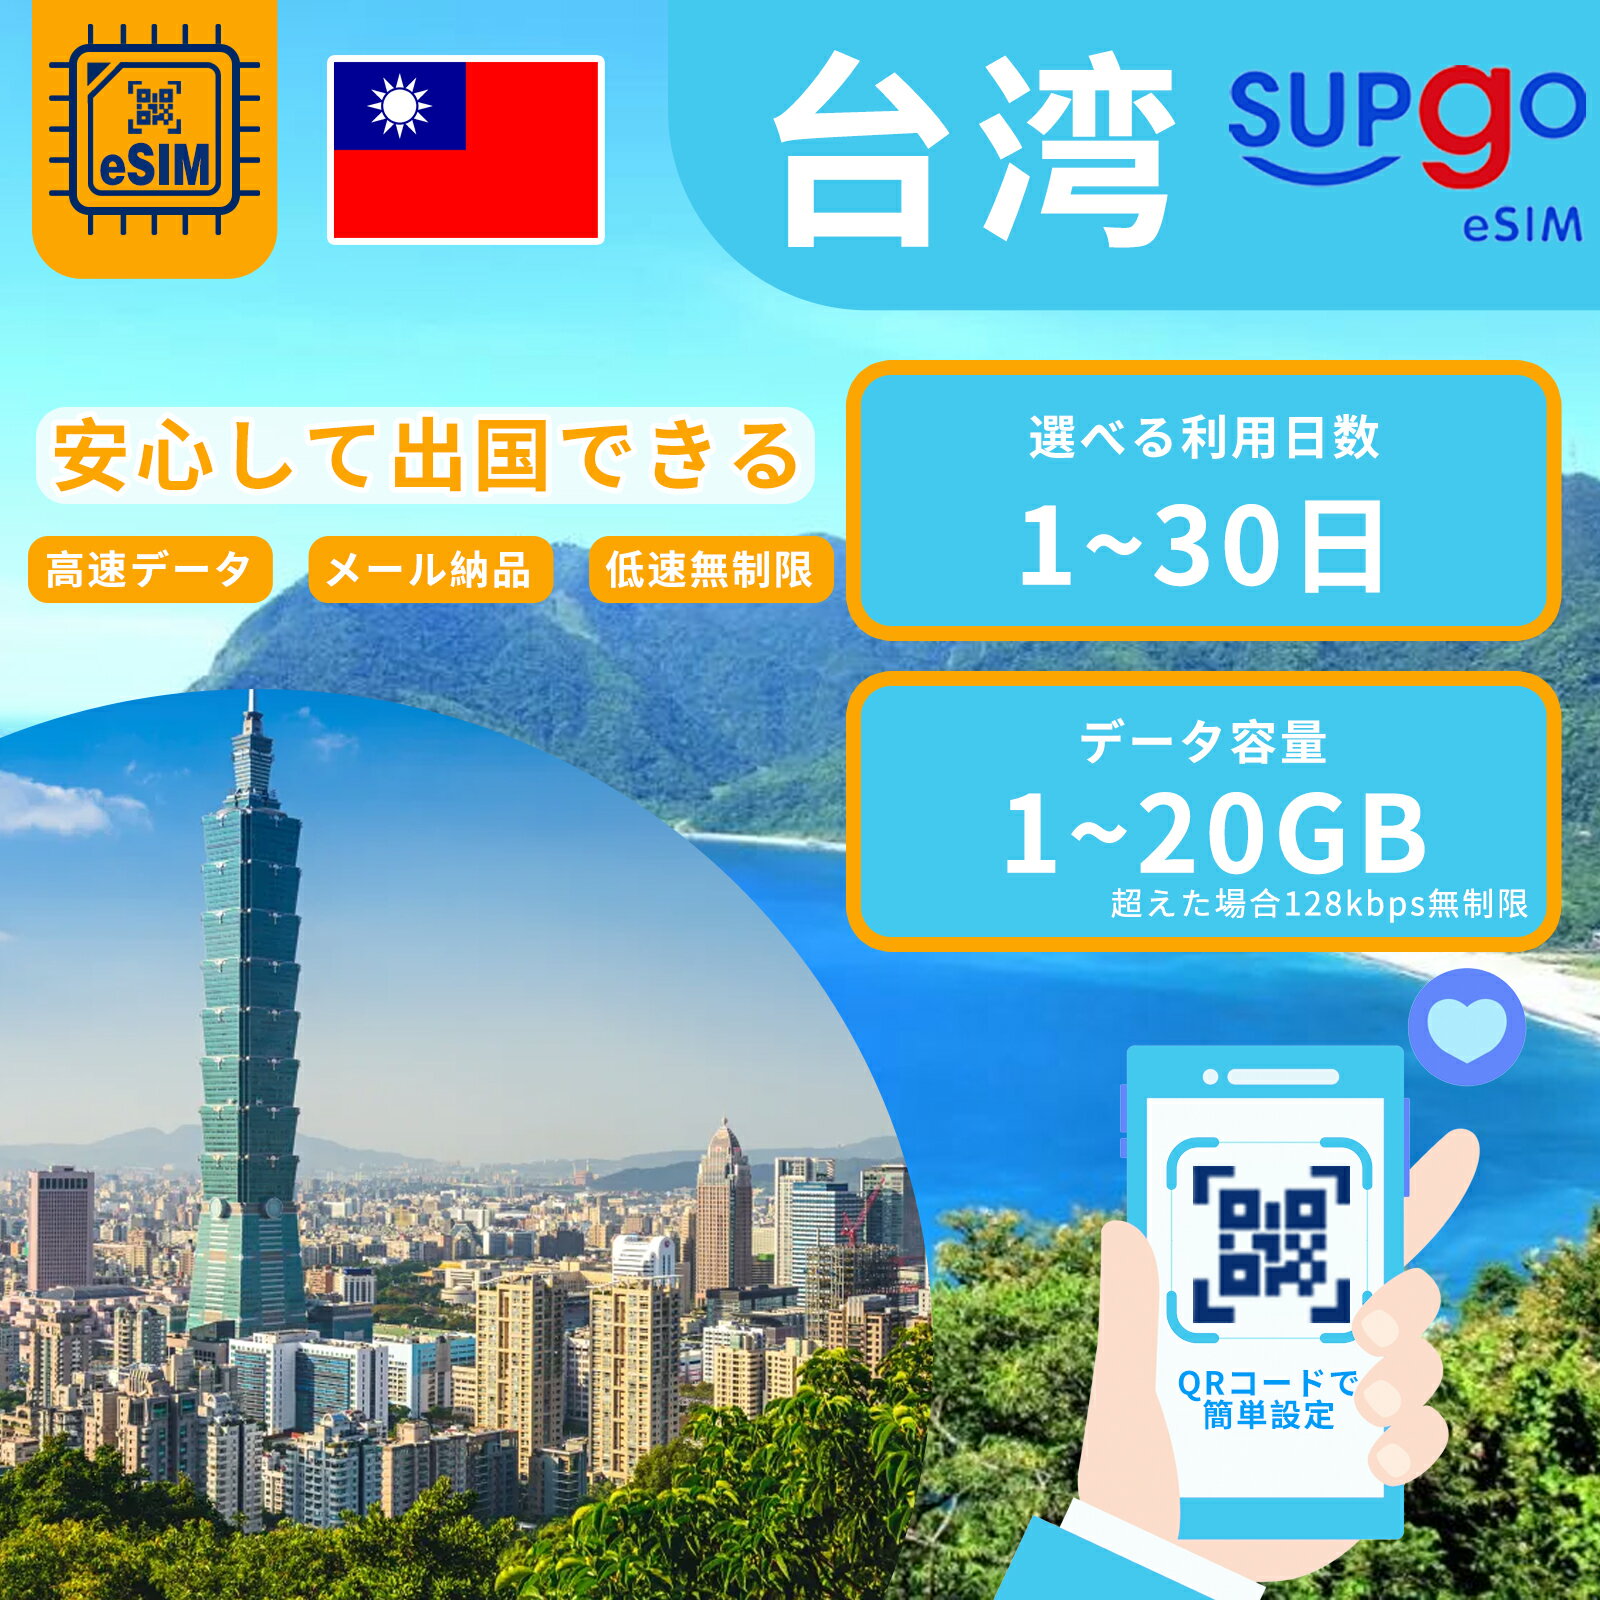 【GW5%OFF！】 eSIM 台湾 台北 esimカード 1~20GB 超高速 データ Wi-Fiよりも圧倒的に速い 3日間 5日間 7日間 10日間…